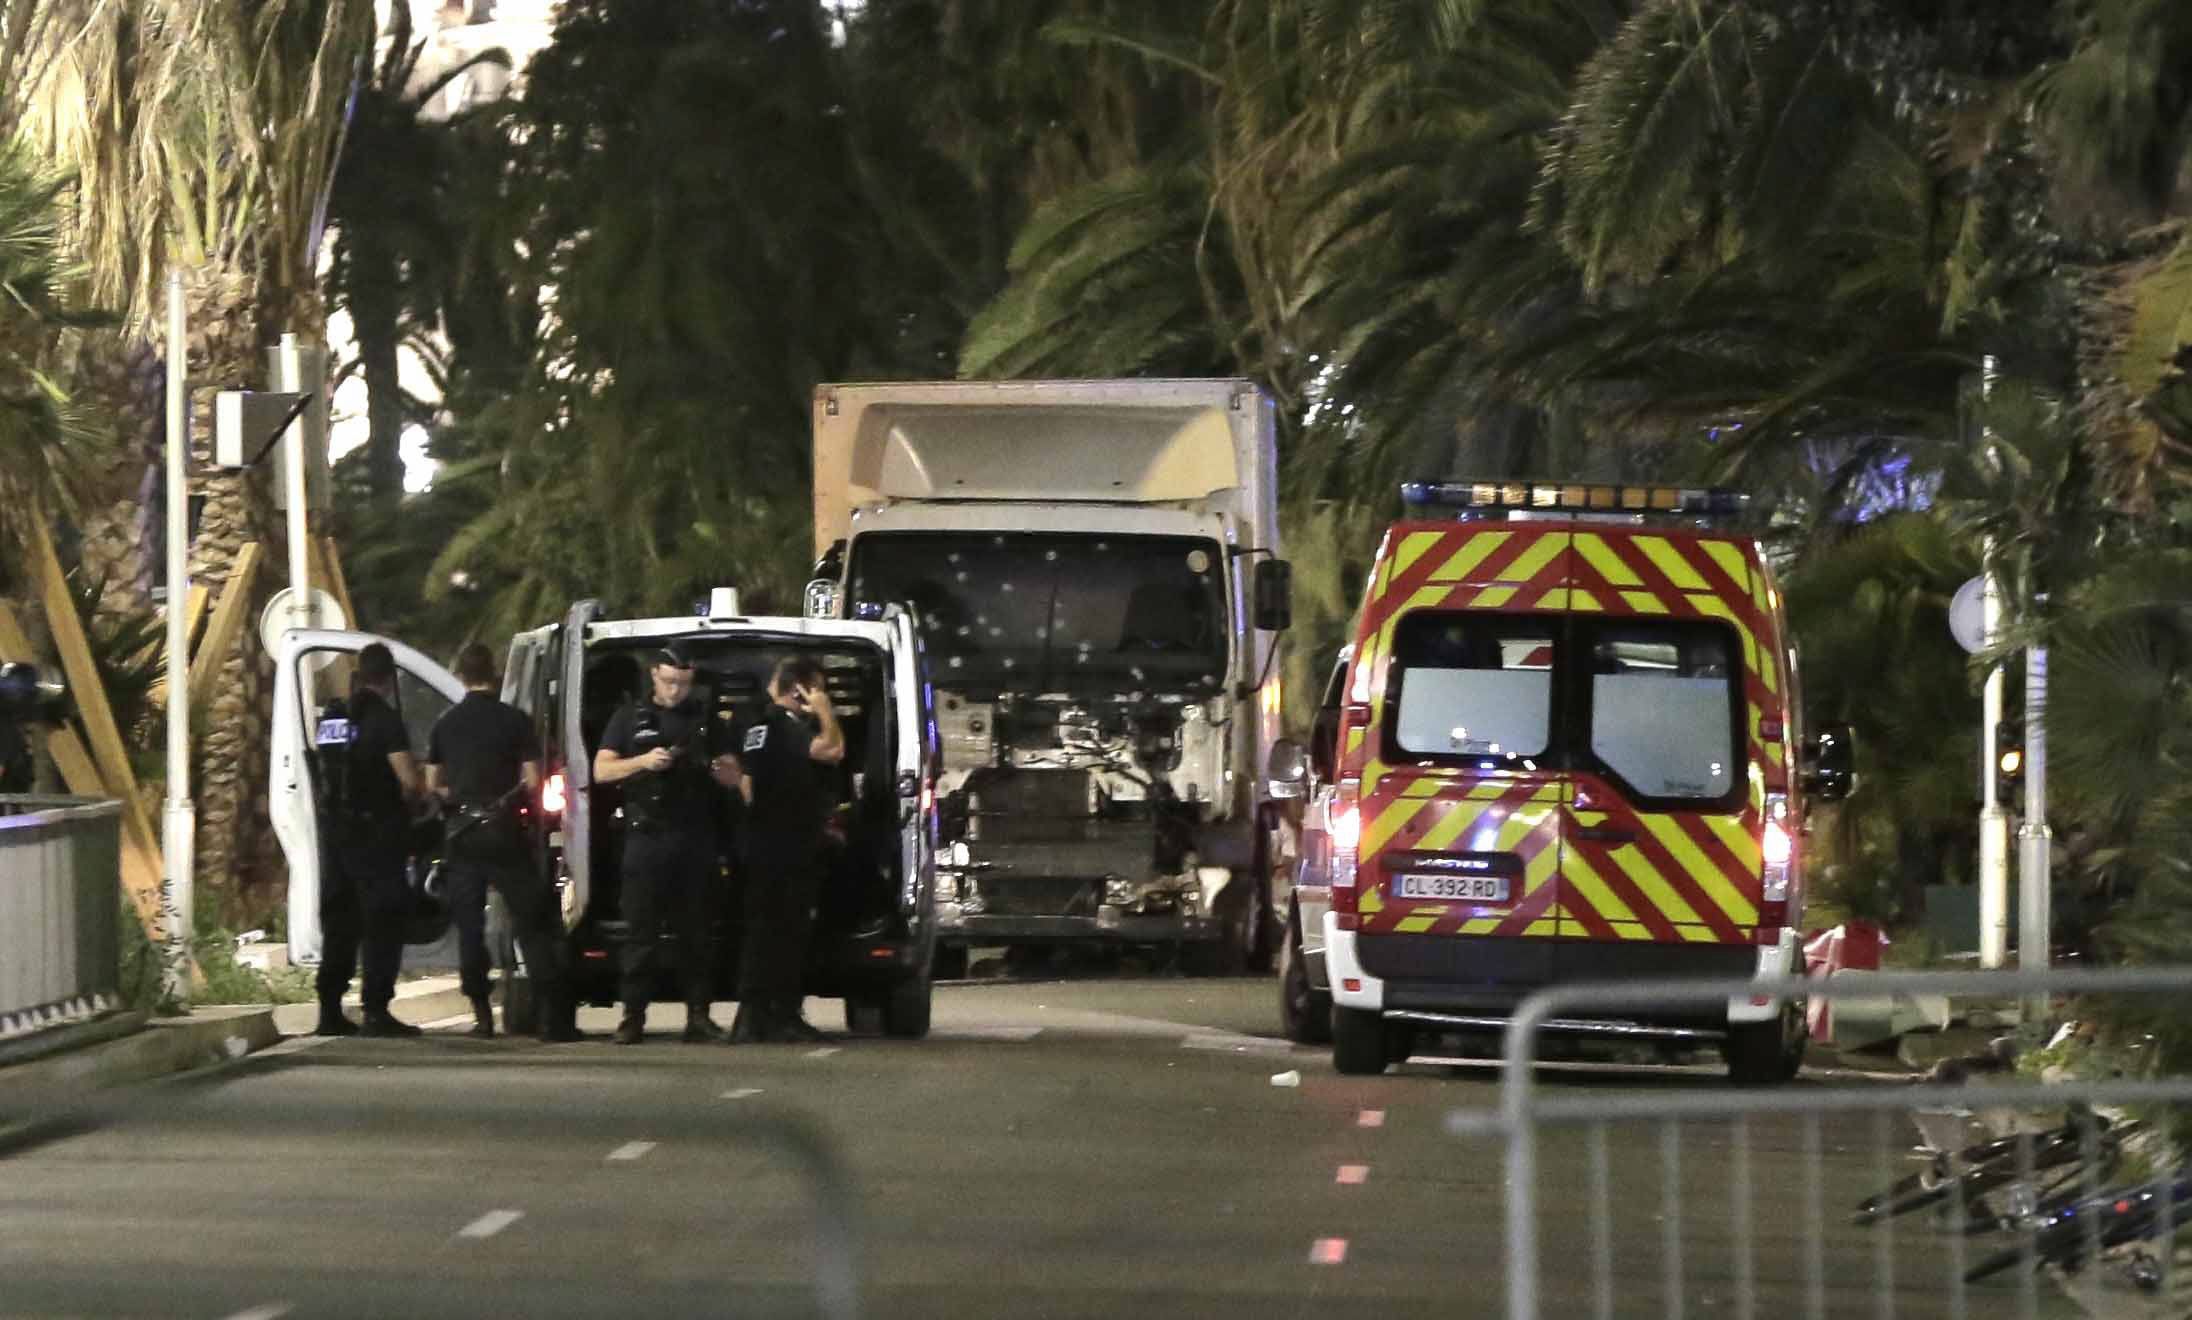 "Tráeme más armas", el SMS que envió el autor del atentado de Niza